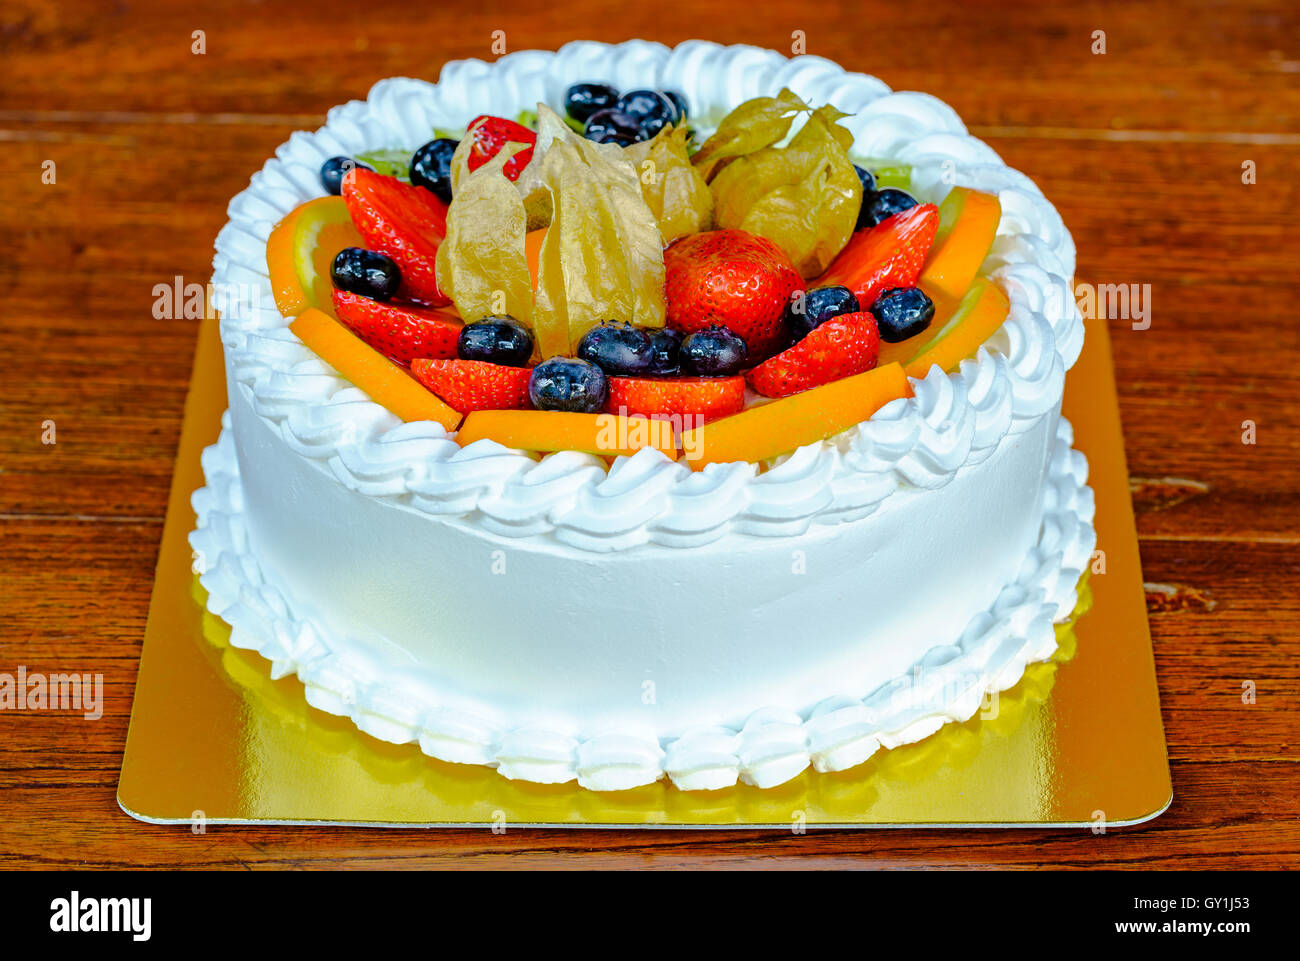 Délicieux gâteau garni de diverses sortes de fruits Banque D'Images